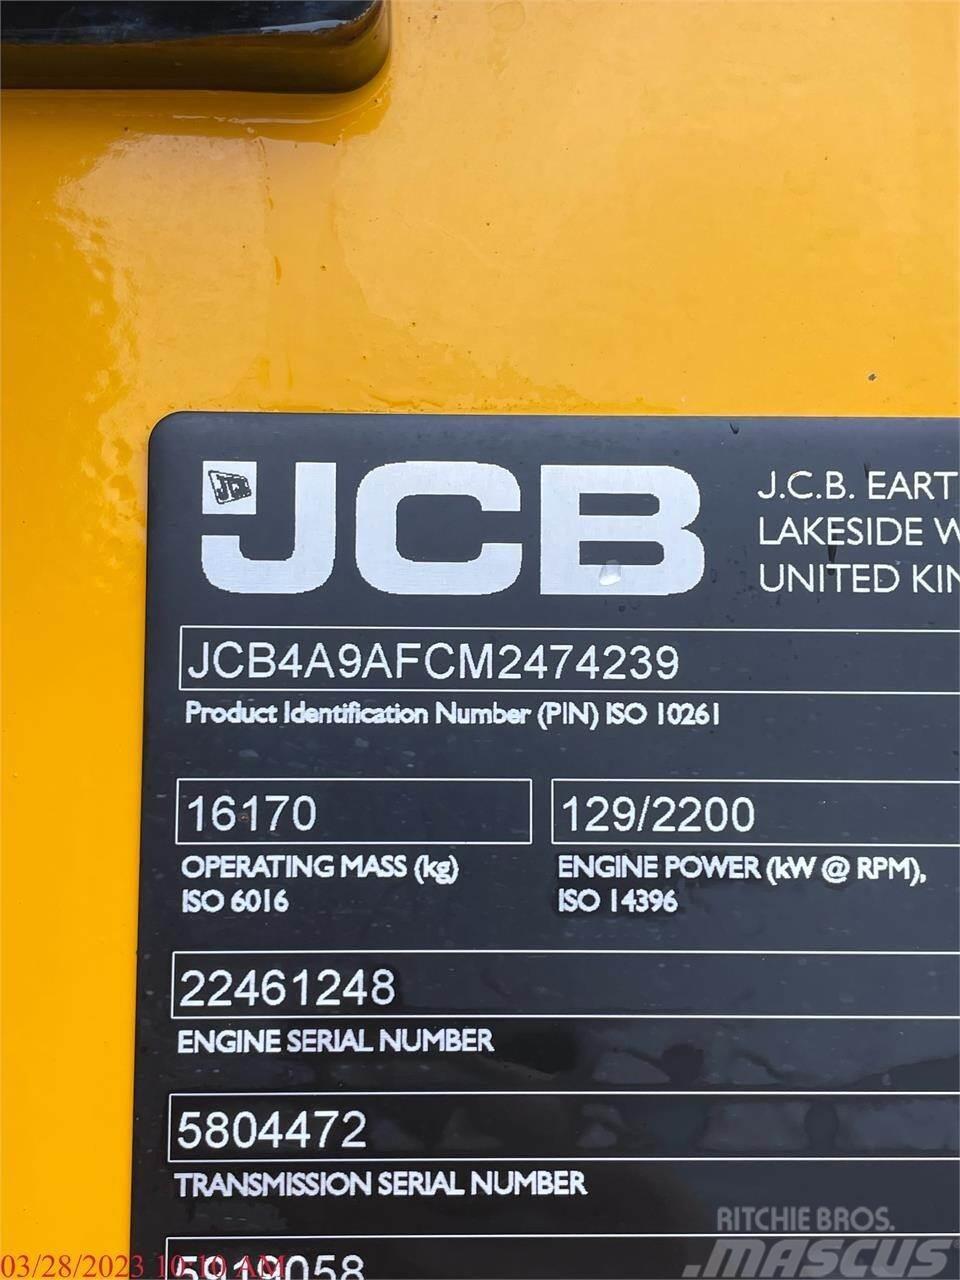 JCB 437ZX Kolové nakladače